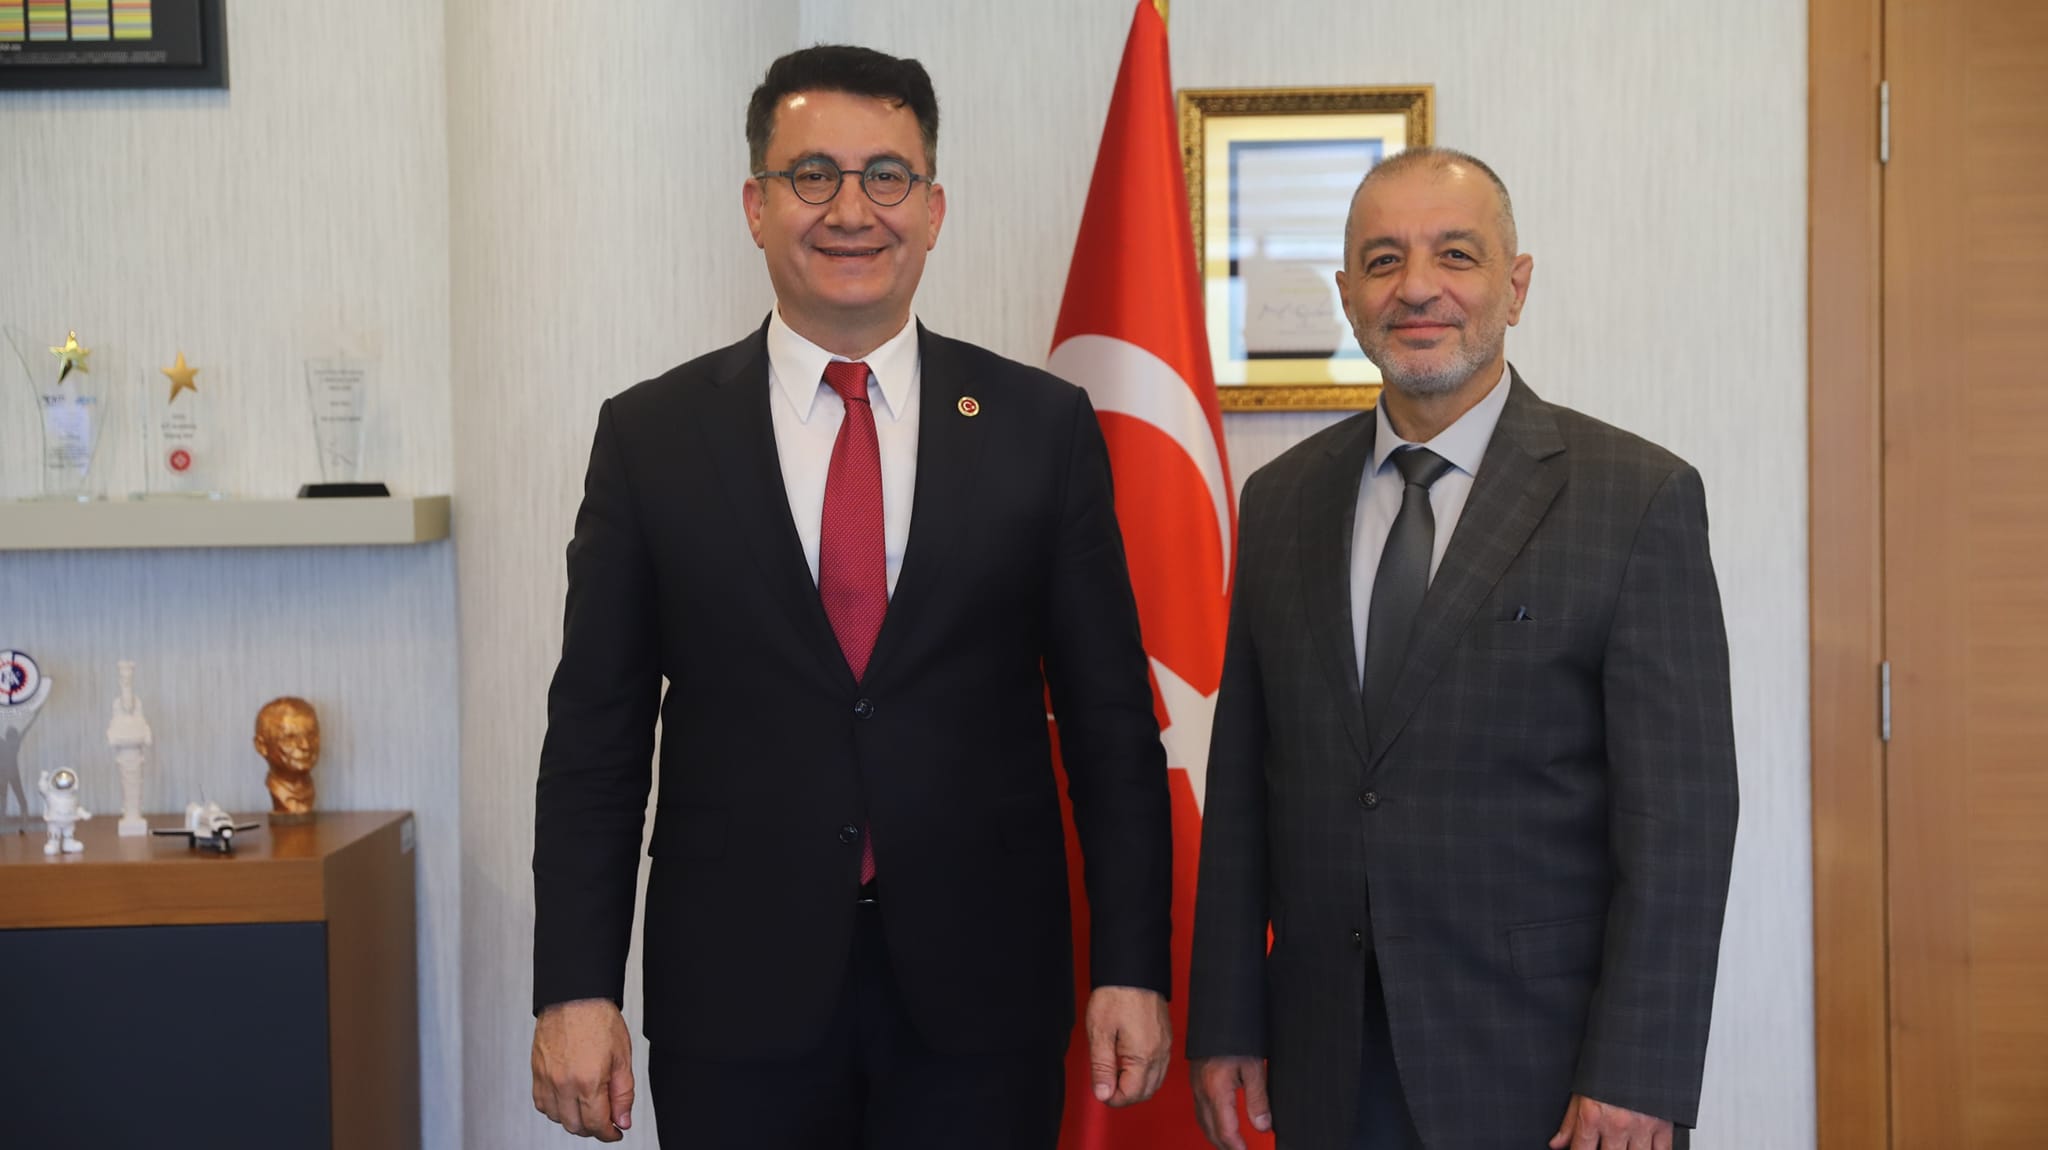 Hasan Kalyoncu Üniversitesi Rektörü Prof. Dr. Türkay Dereli, İzmir Yüksek Teknoloji Enstitüsü'nü Ziyaret Etti